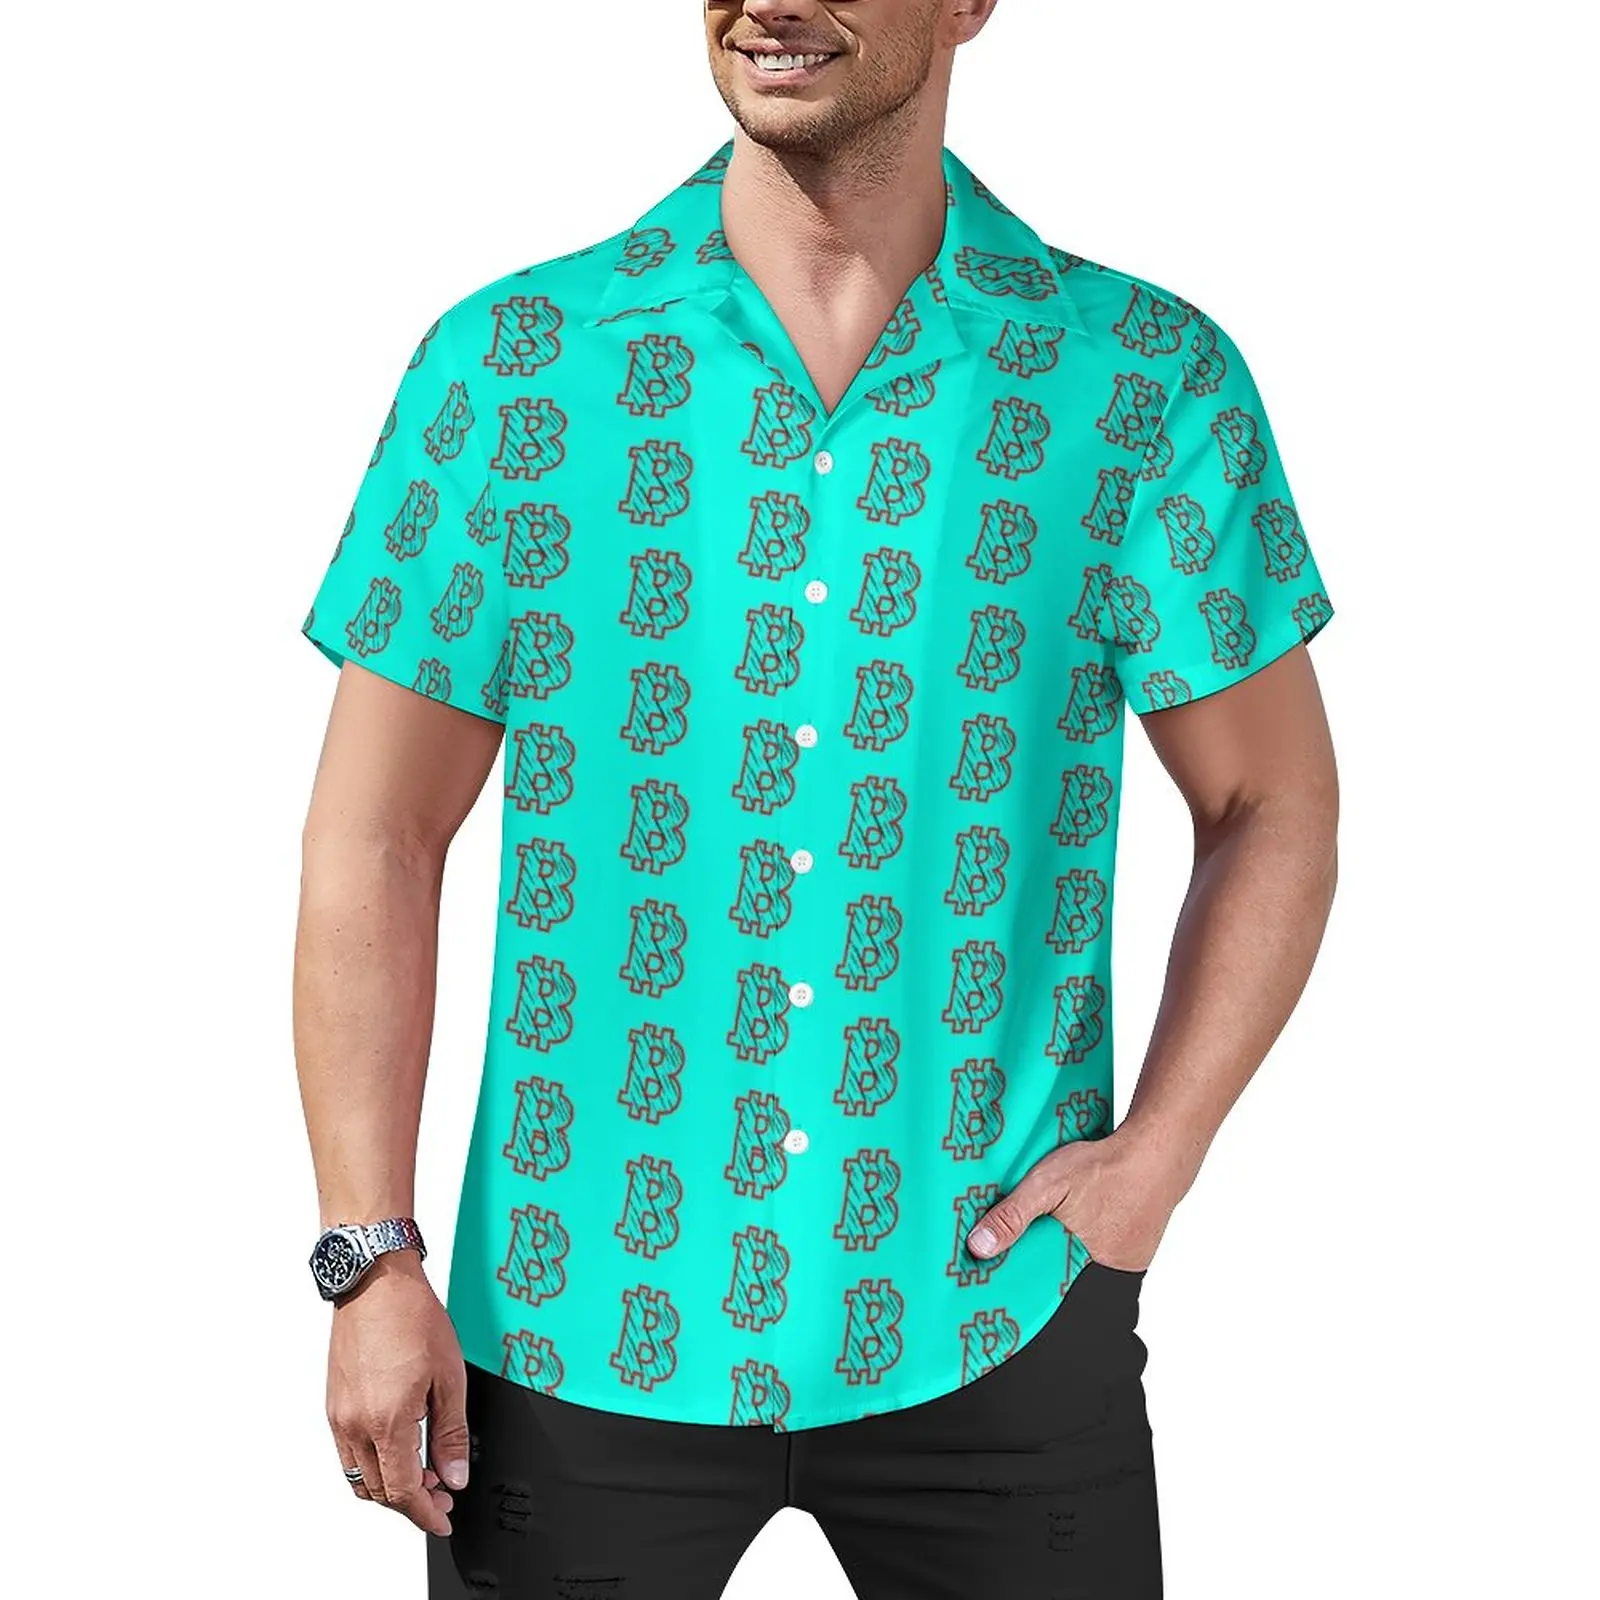 

Bitcoin B Tiger Casual Shirt Virtual Currency Vacation Loose Shirt Hawaiian Retro Blouses Short Sleeve Printed Oversize Top